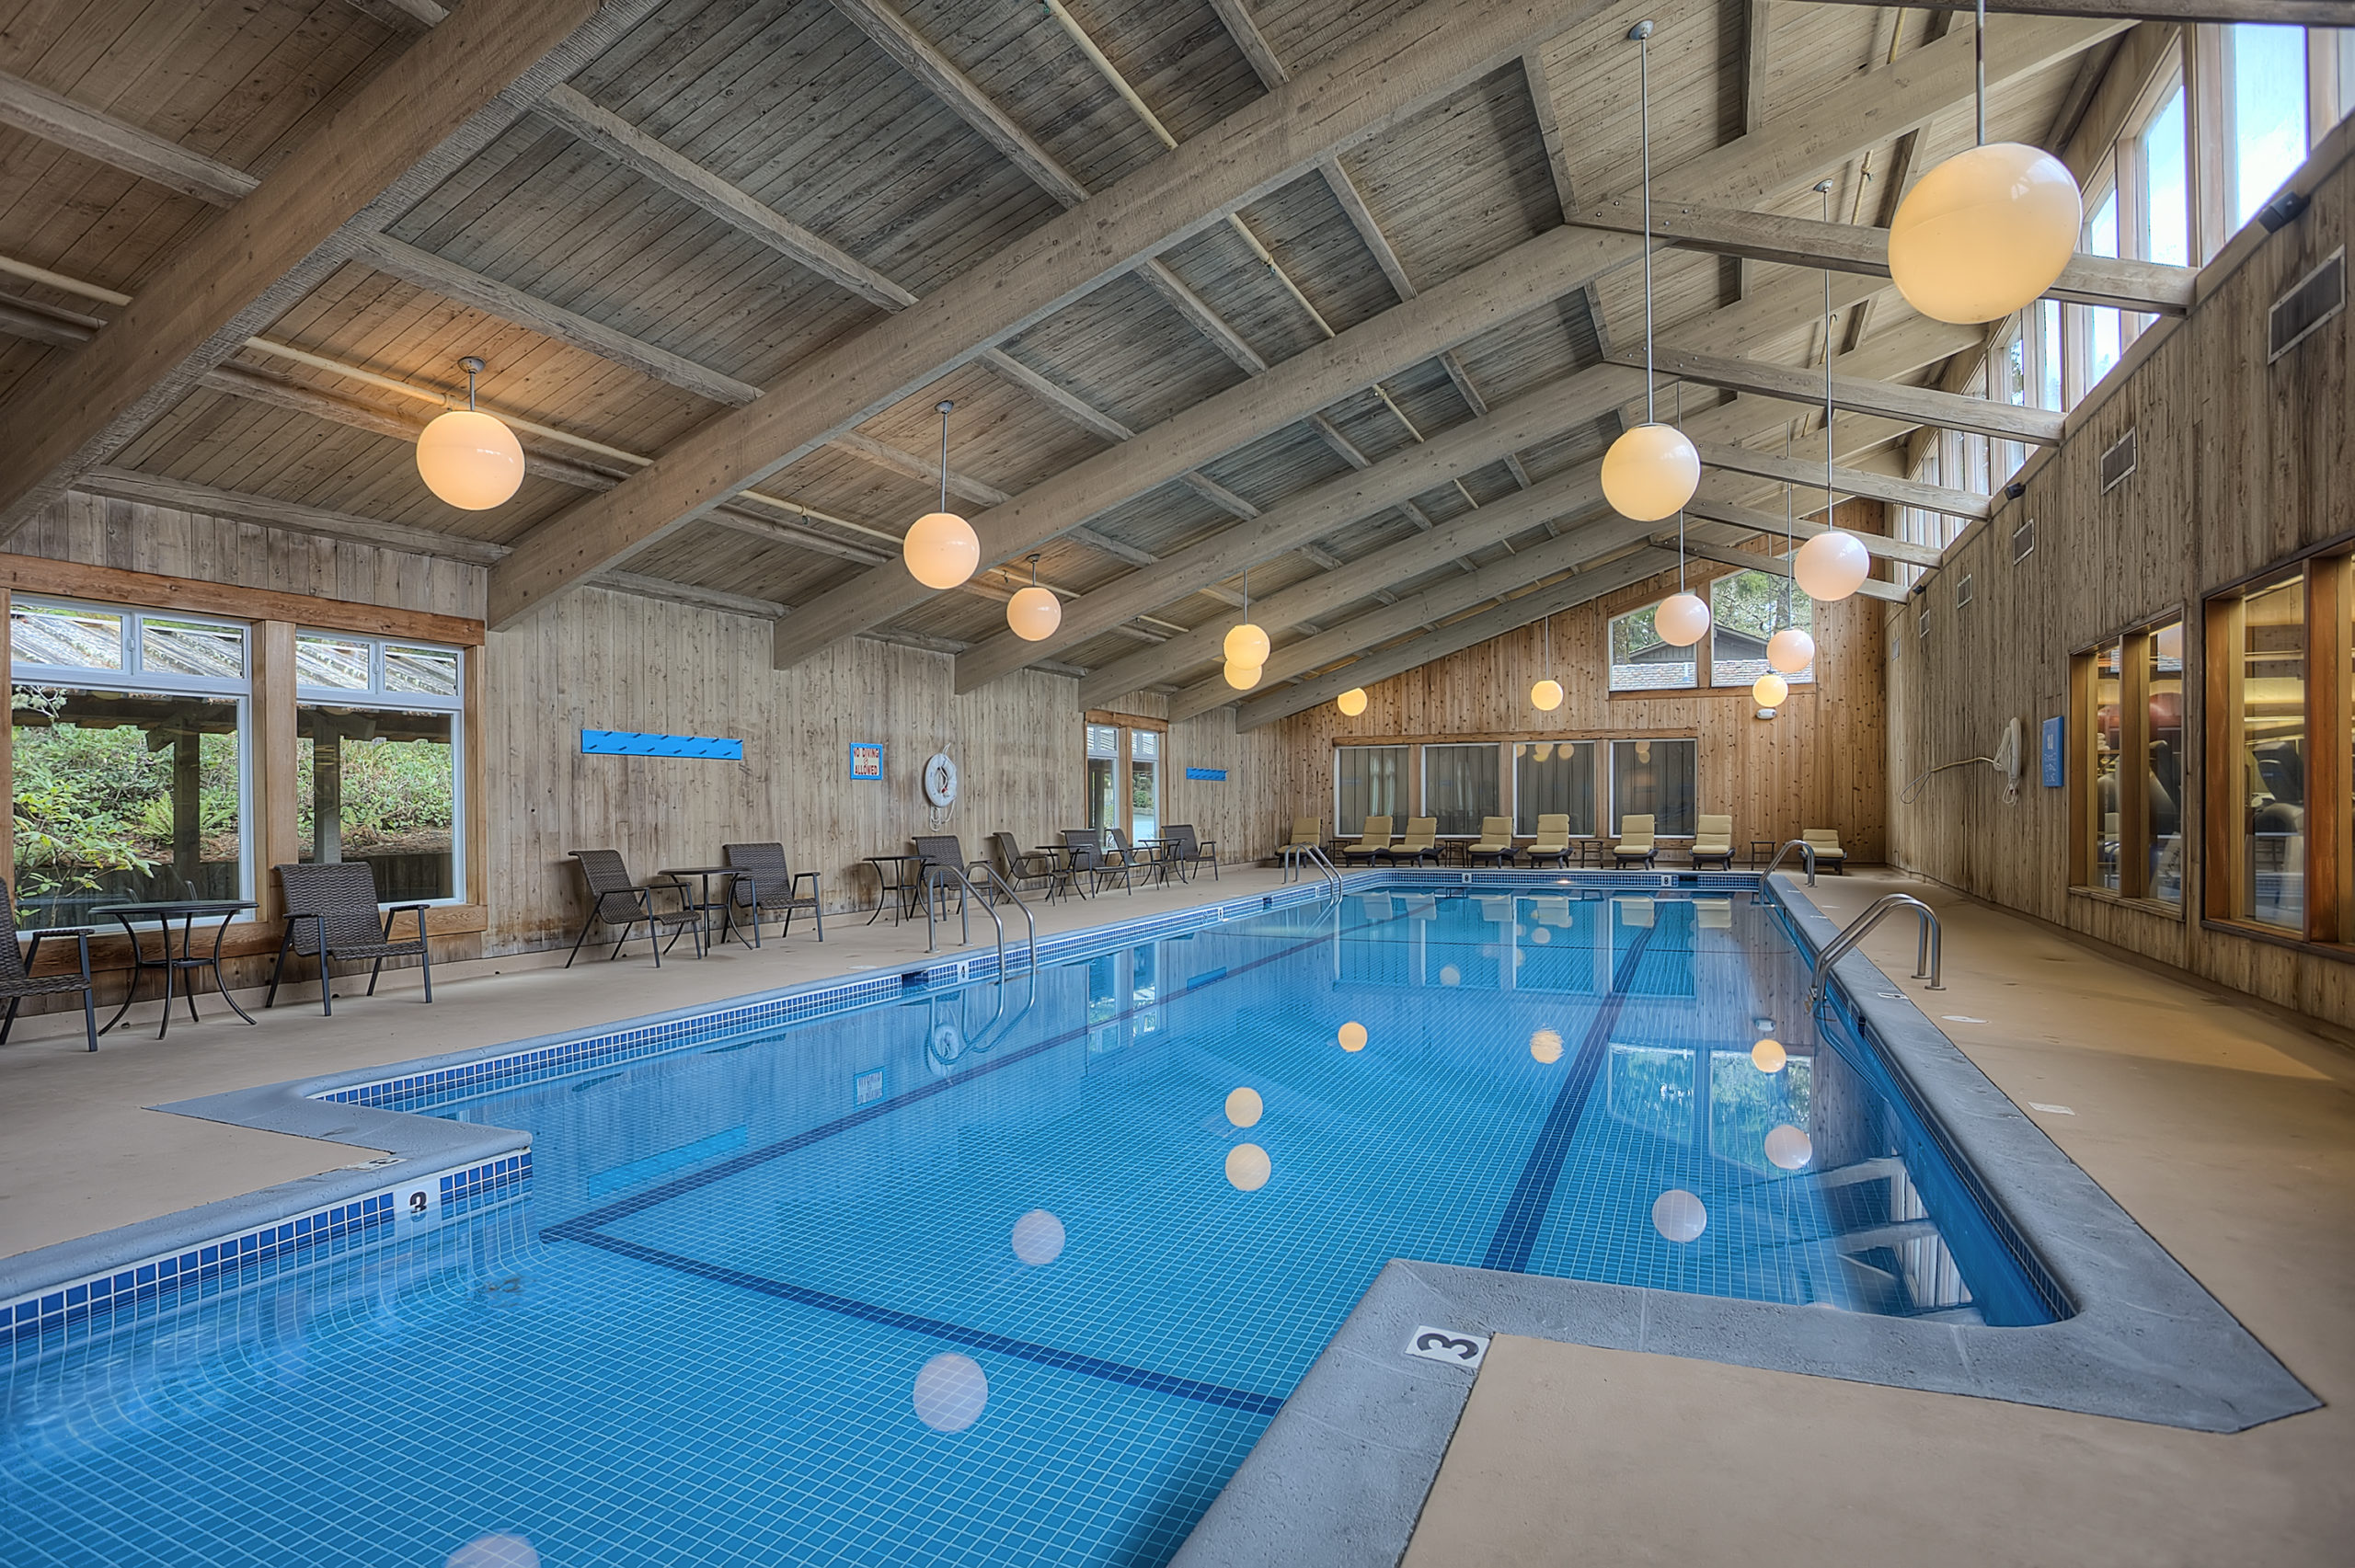 Indoor pool resort hotel Salishan Lincoln City Oregon Coast